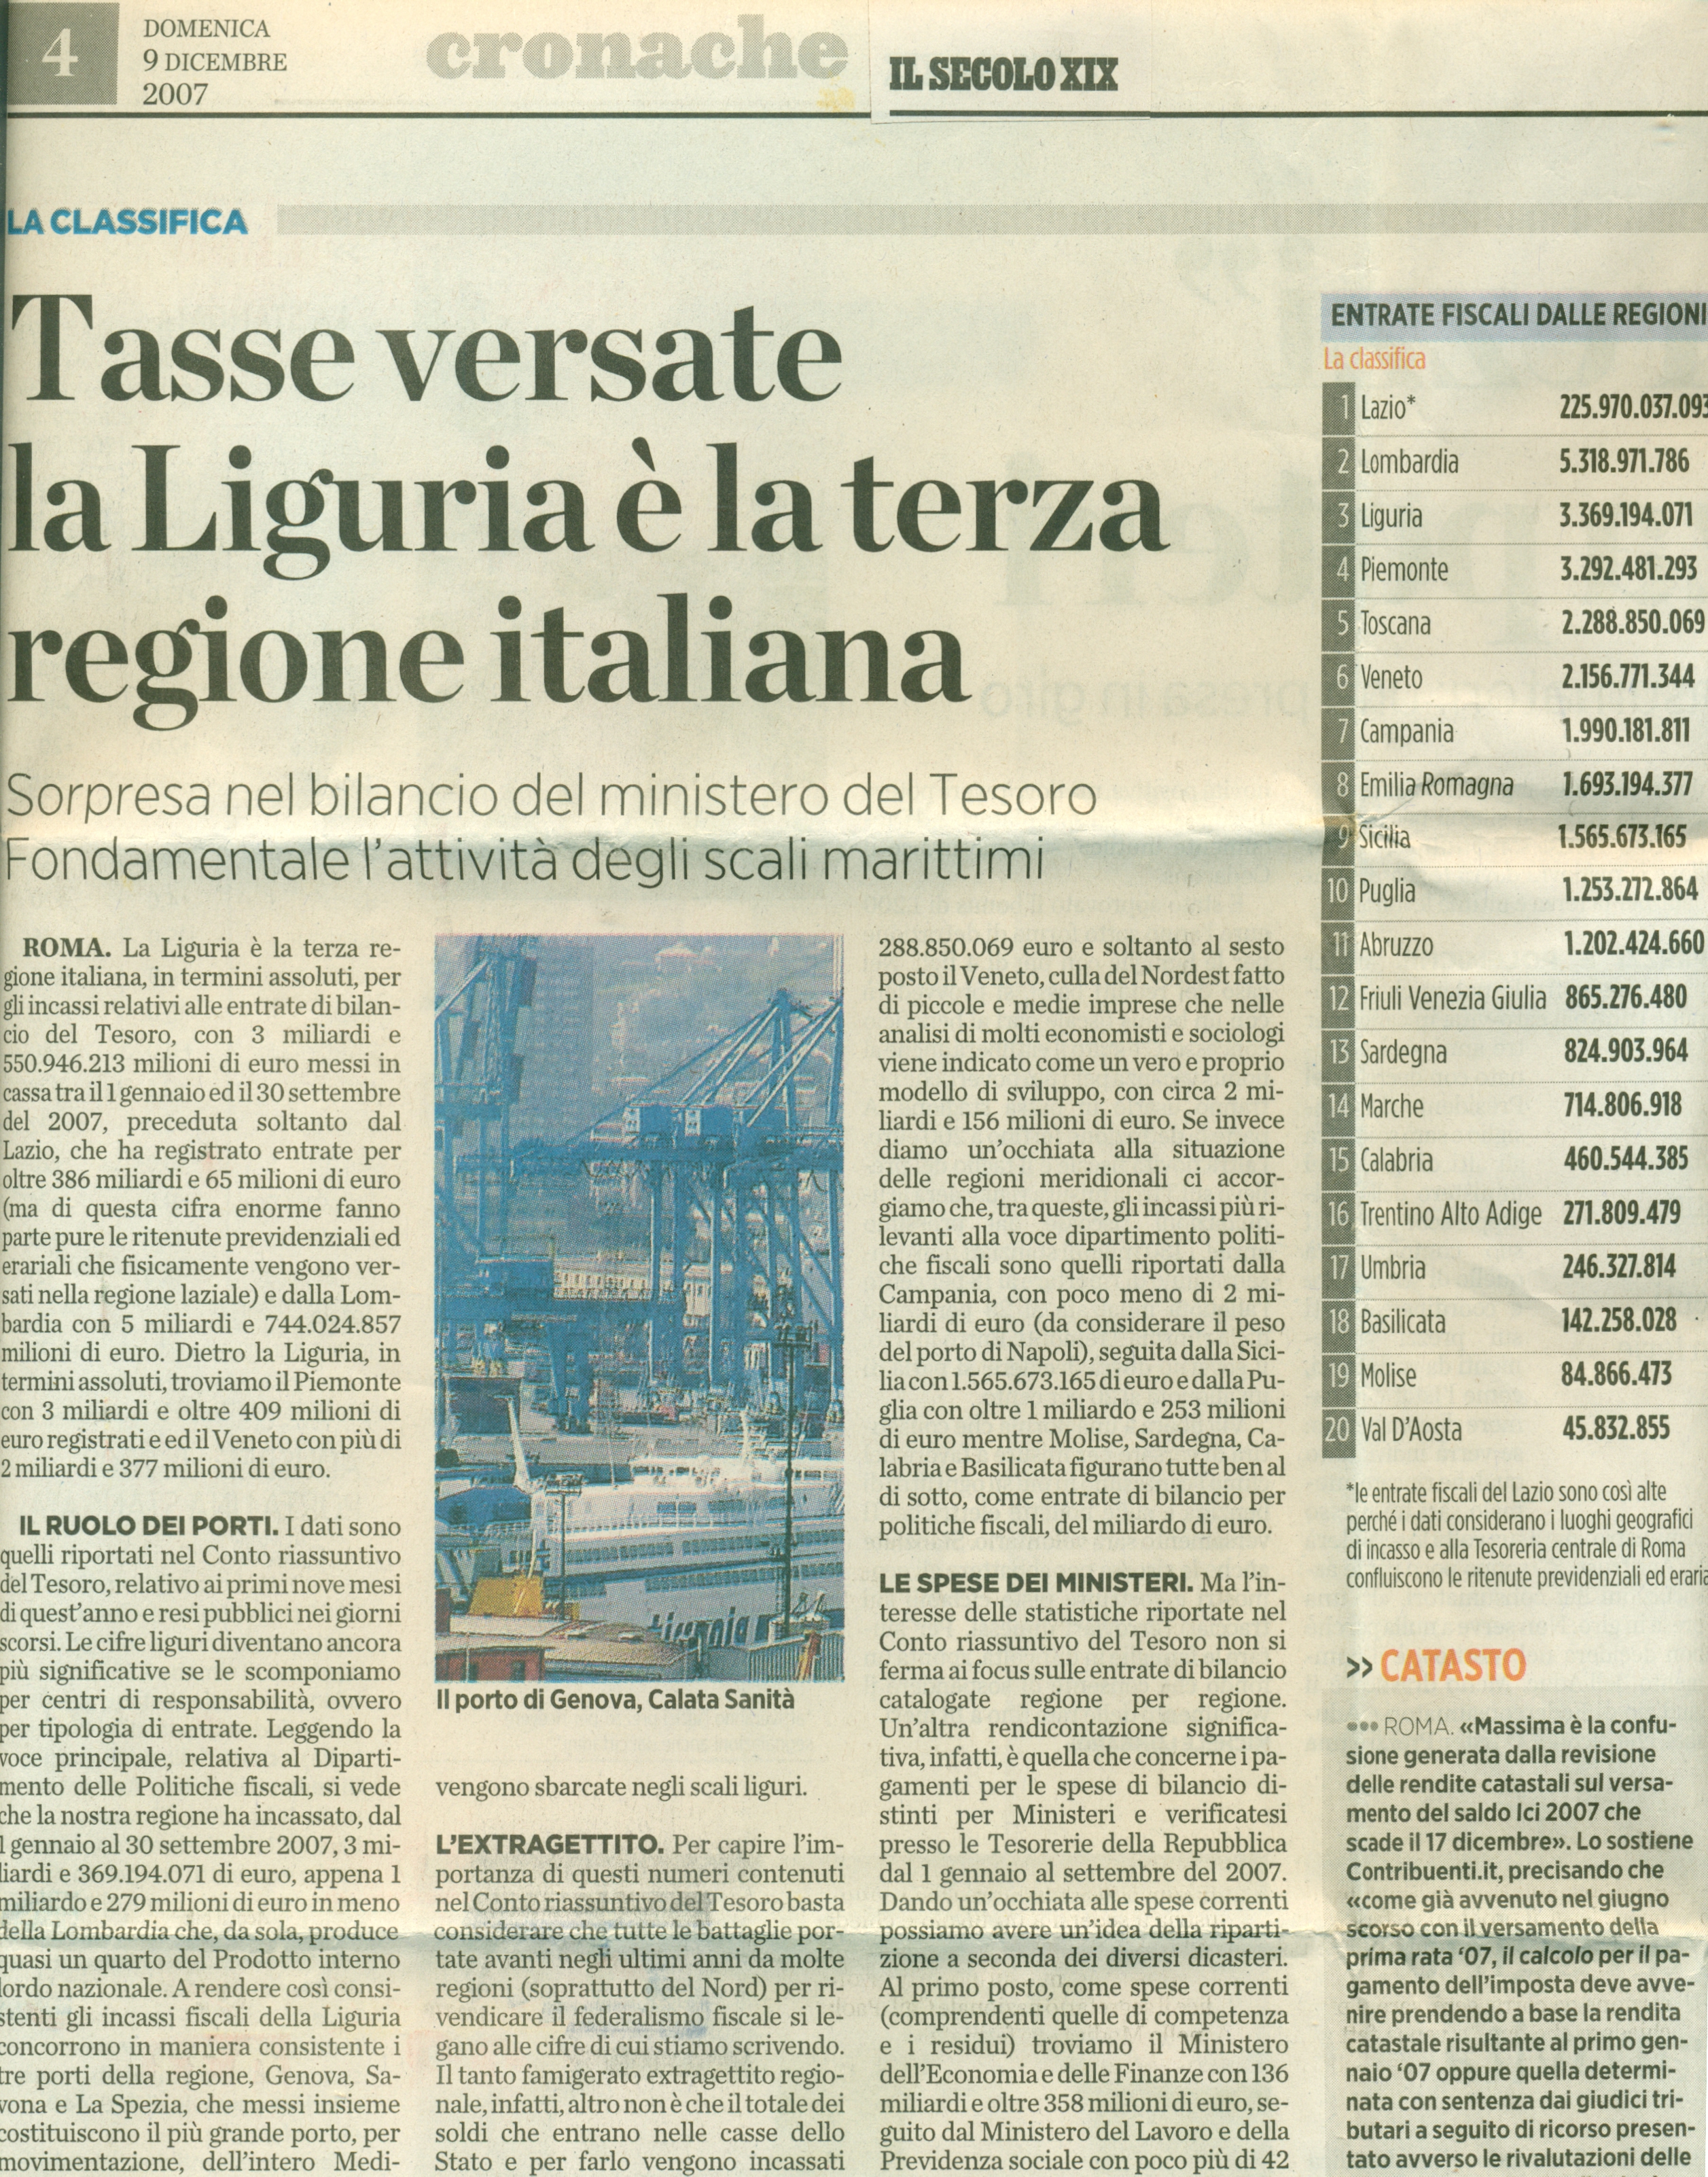 2007 12 09 Tasse versate la Liguria  la terza regione italiana   Il Secolo XIX